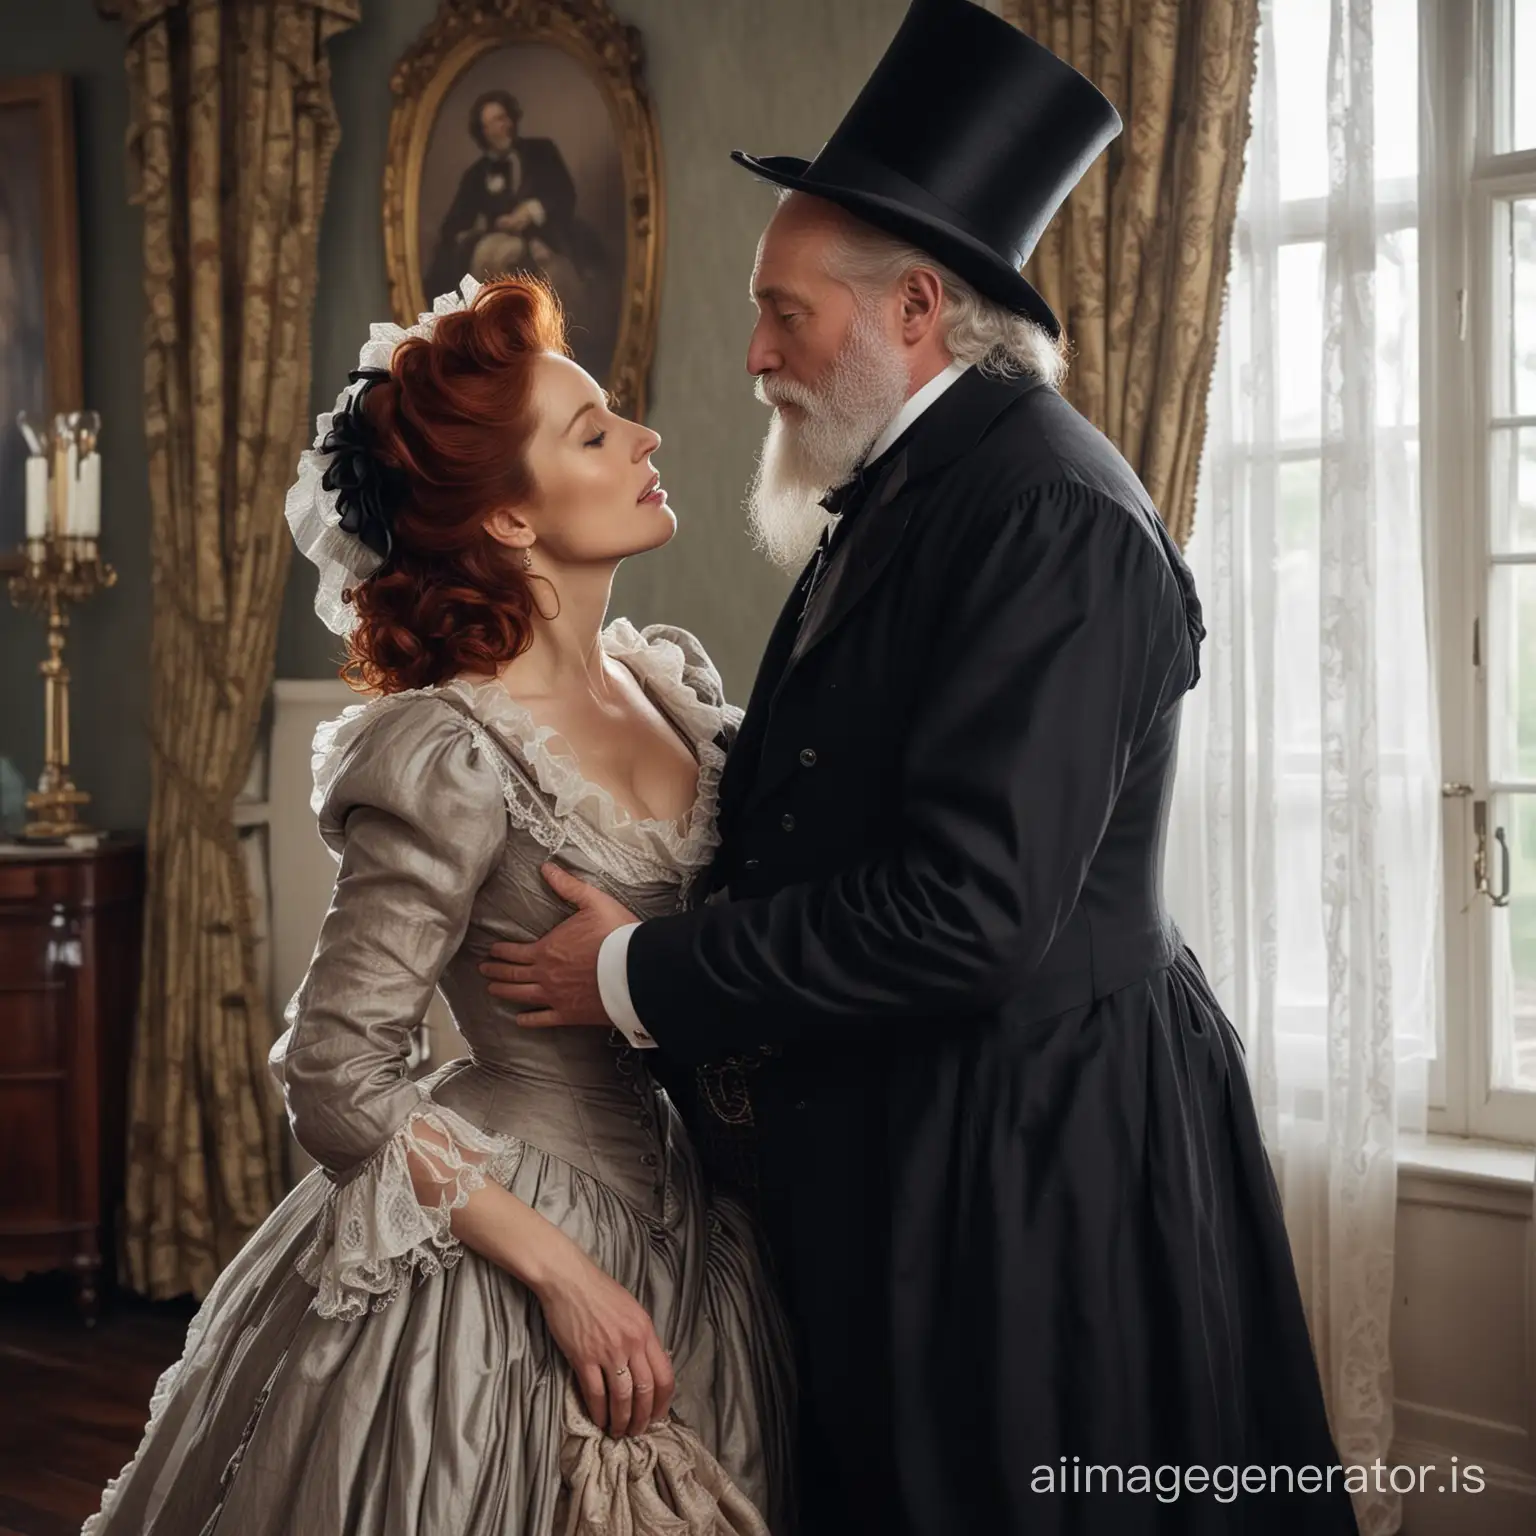 Victorian-Newlyweds-Romantic-Kiss-in-Elegant-Attire